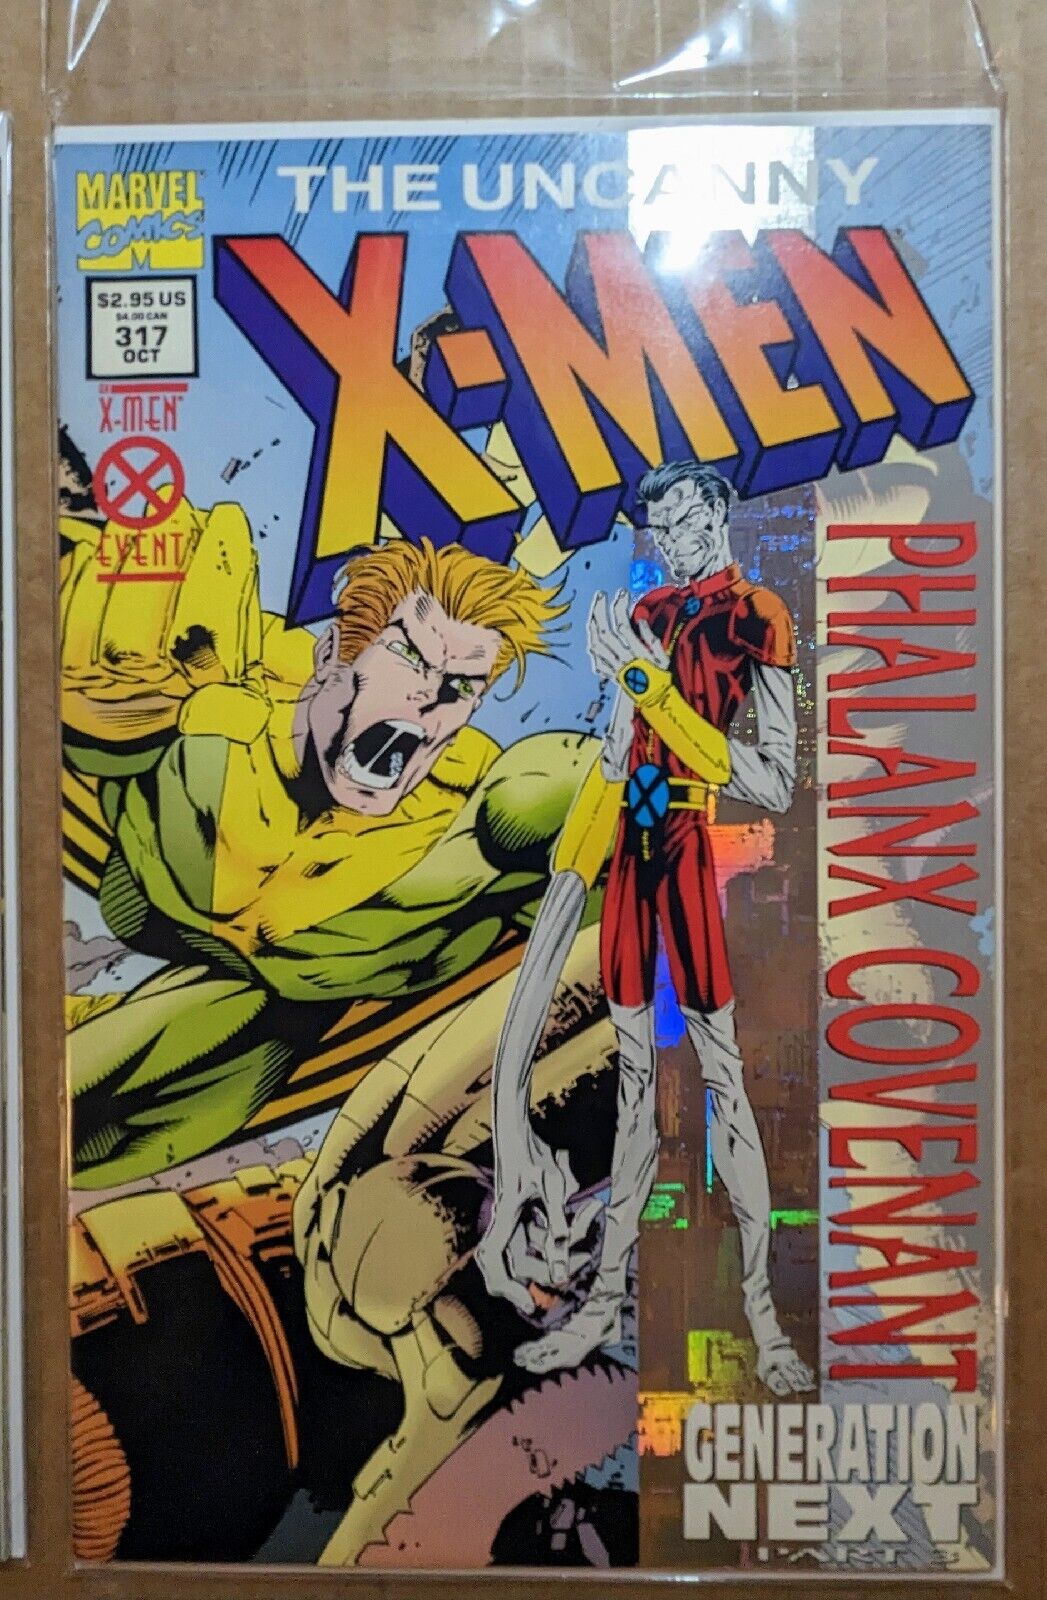 X-Men - Phalanx Covenant Marvel Comics 1994 - 8 books 4 KEYS! NM